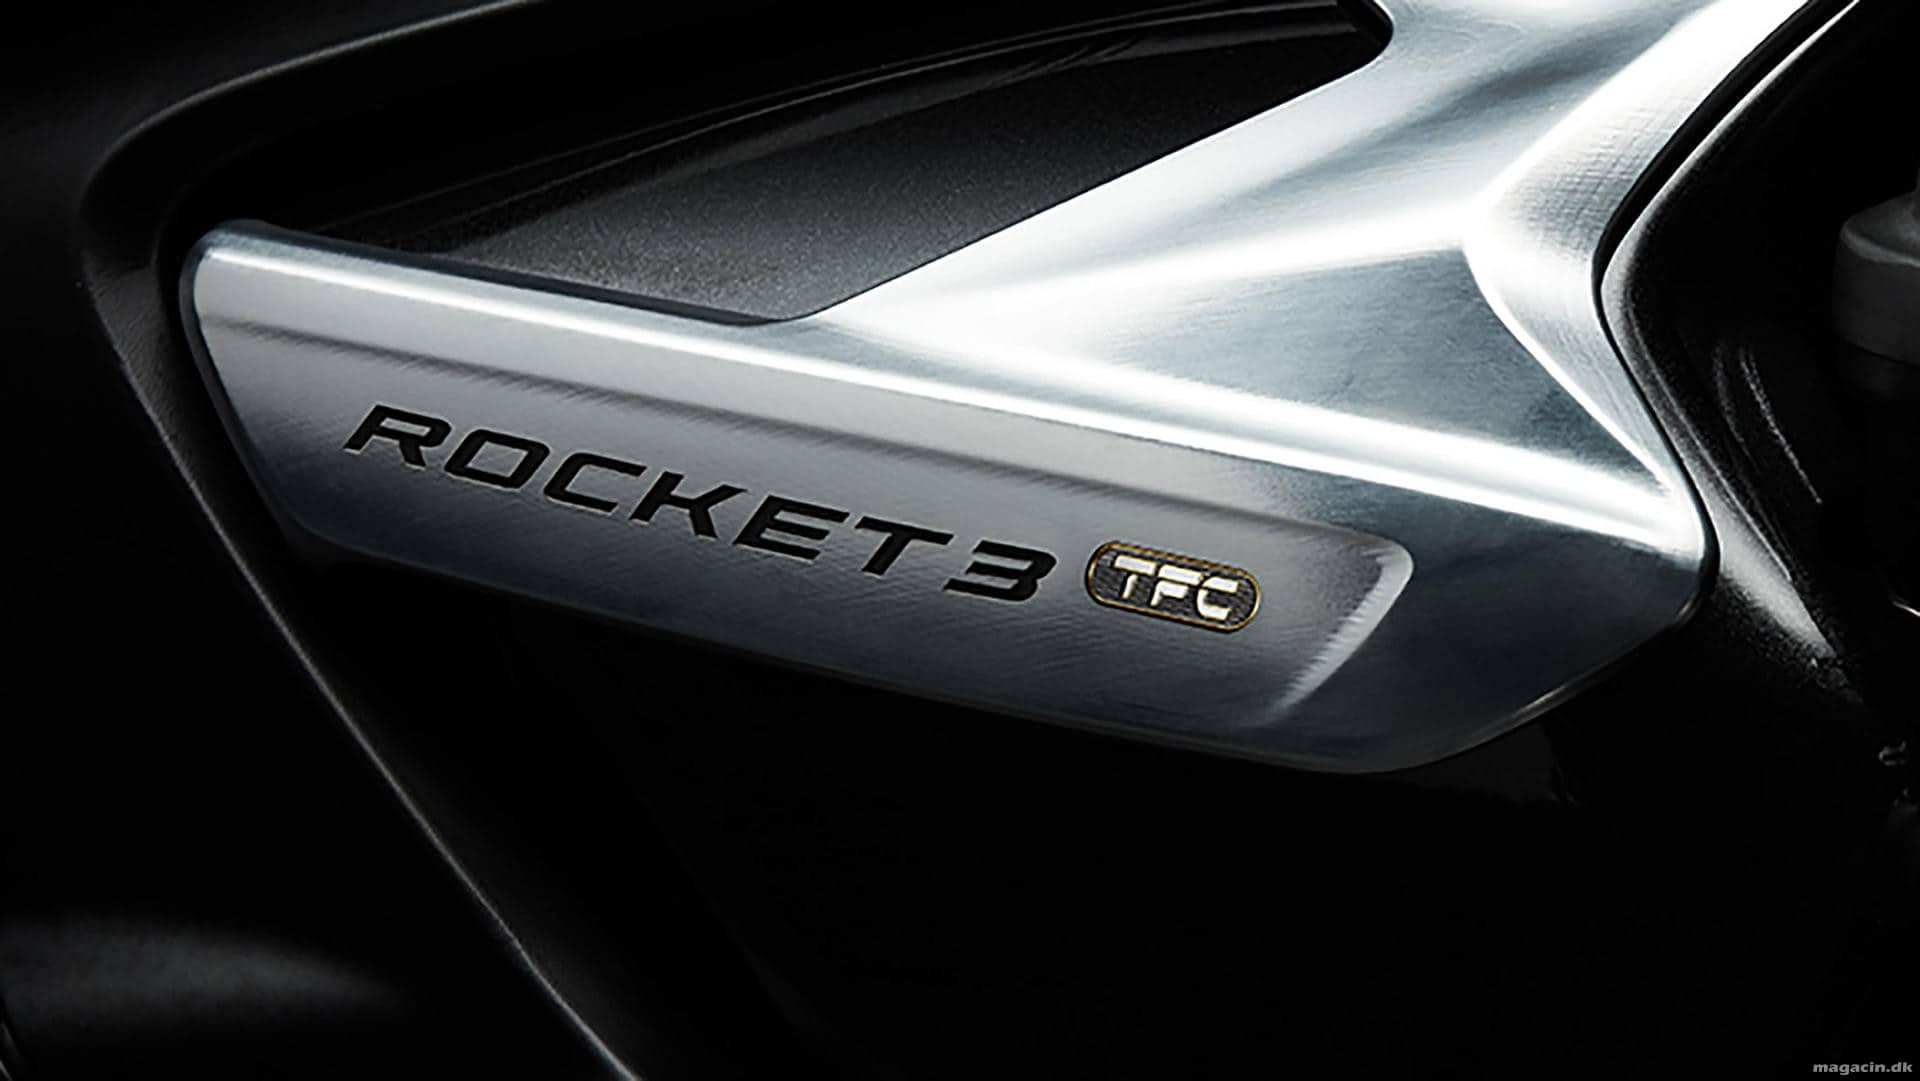 Sær måde at lancere ny Triumph Rocket III på?